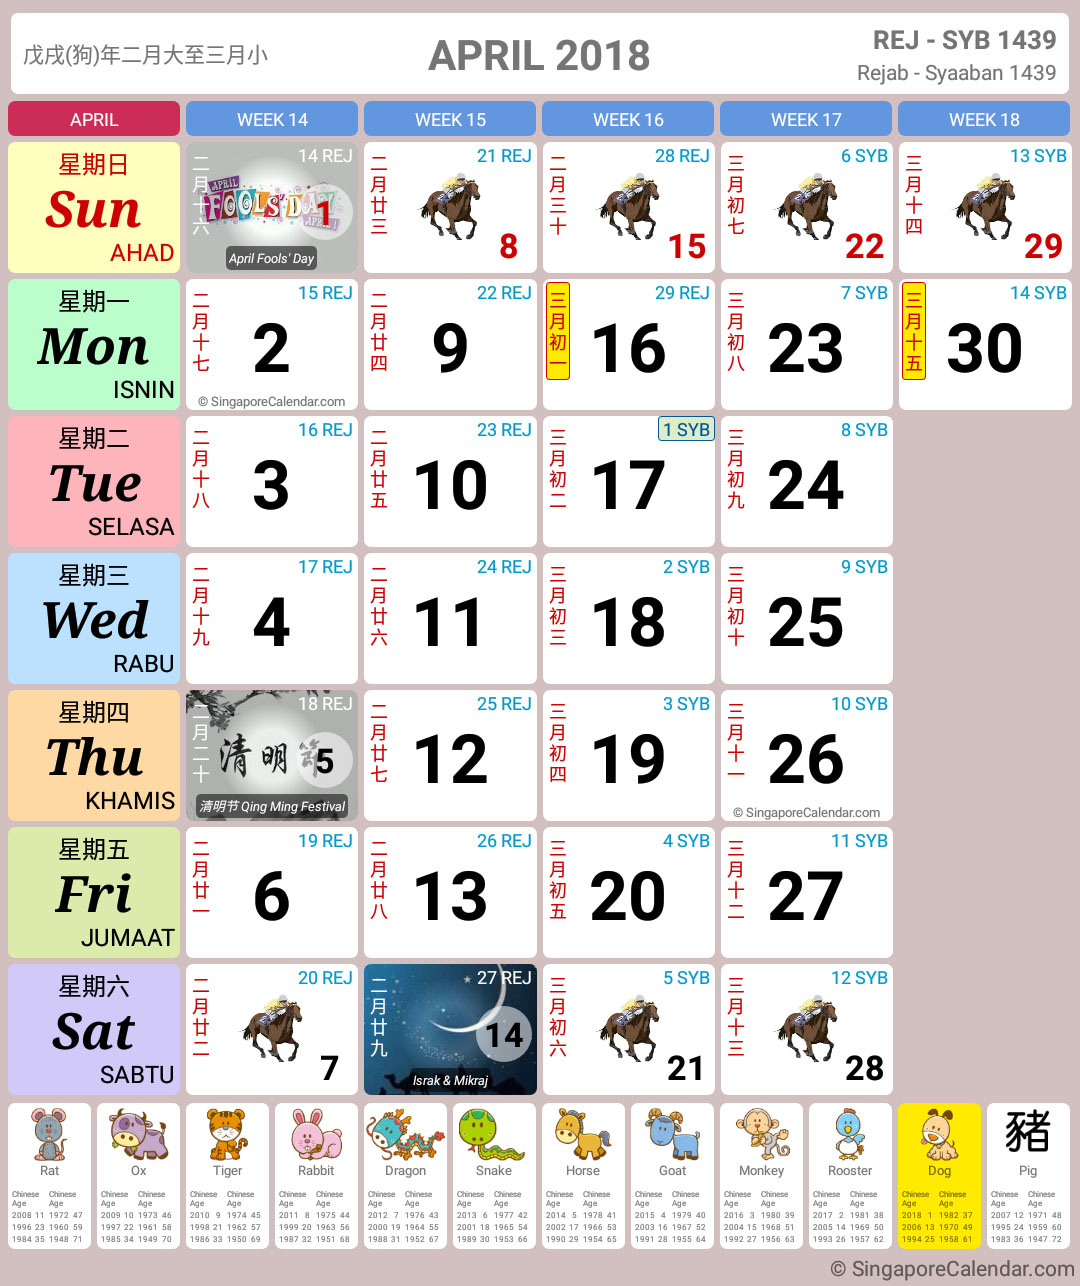 Singapore Calendar Year 2018 - Singapore Calendar